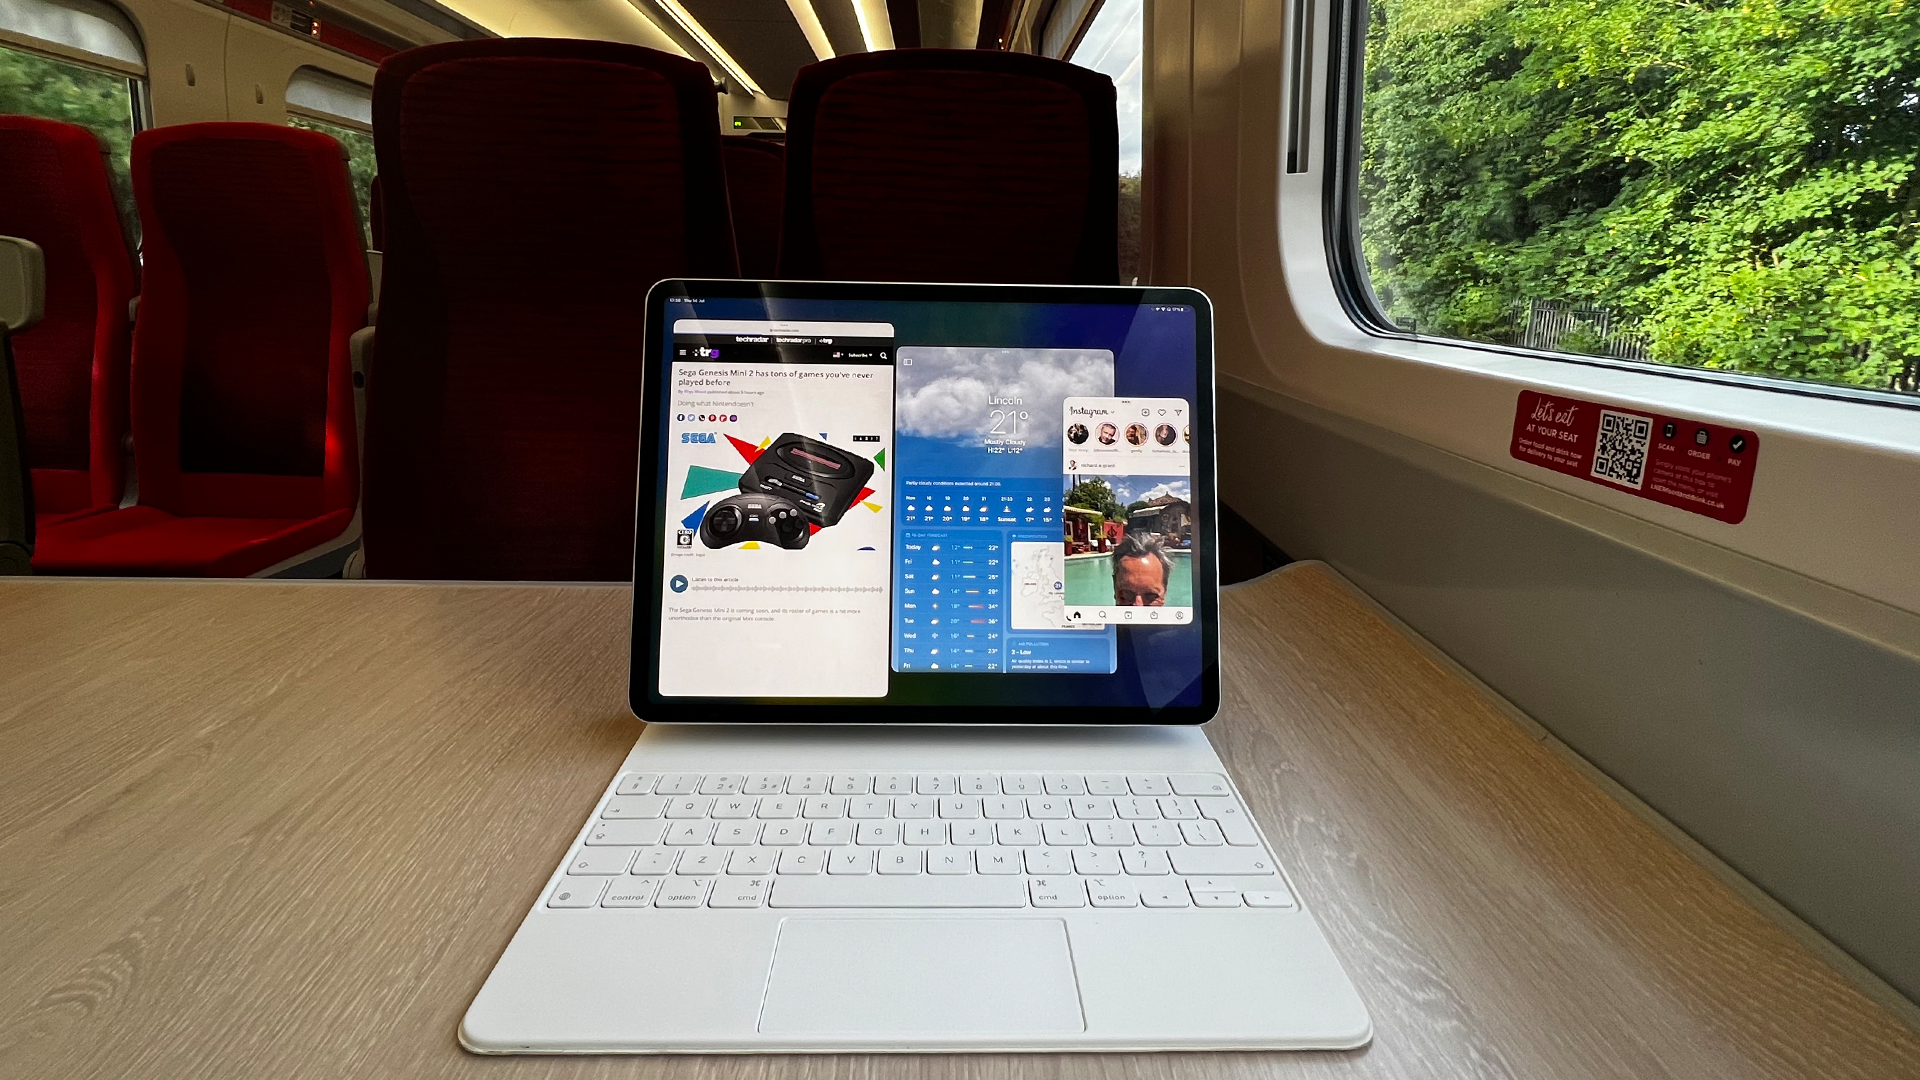 iPad running iPadOS 16 on the train